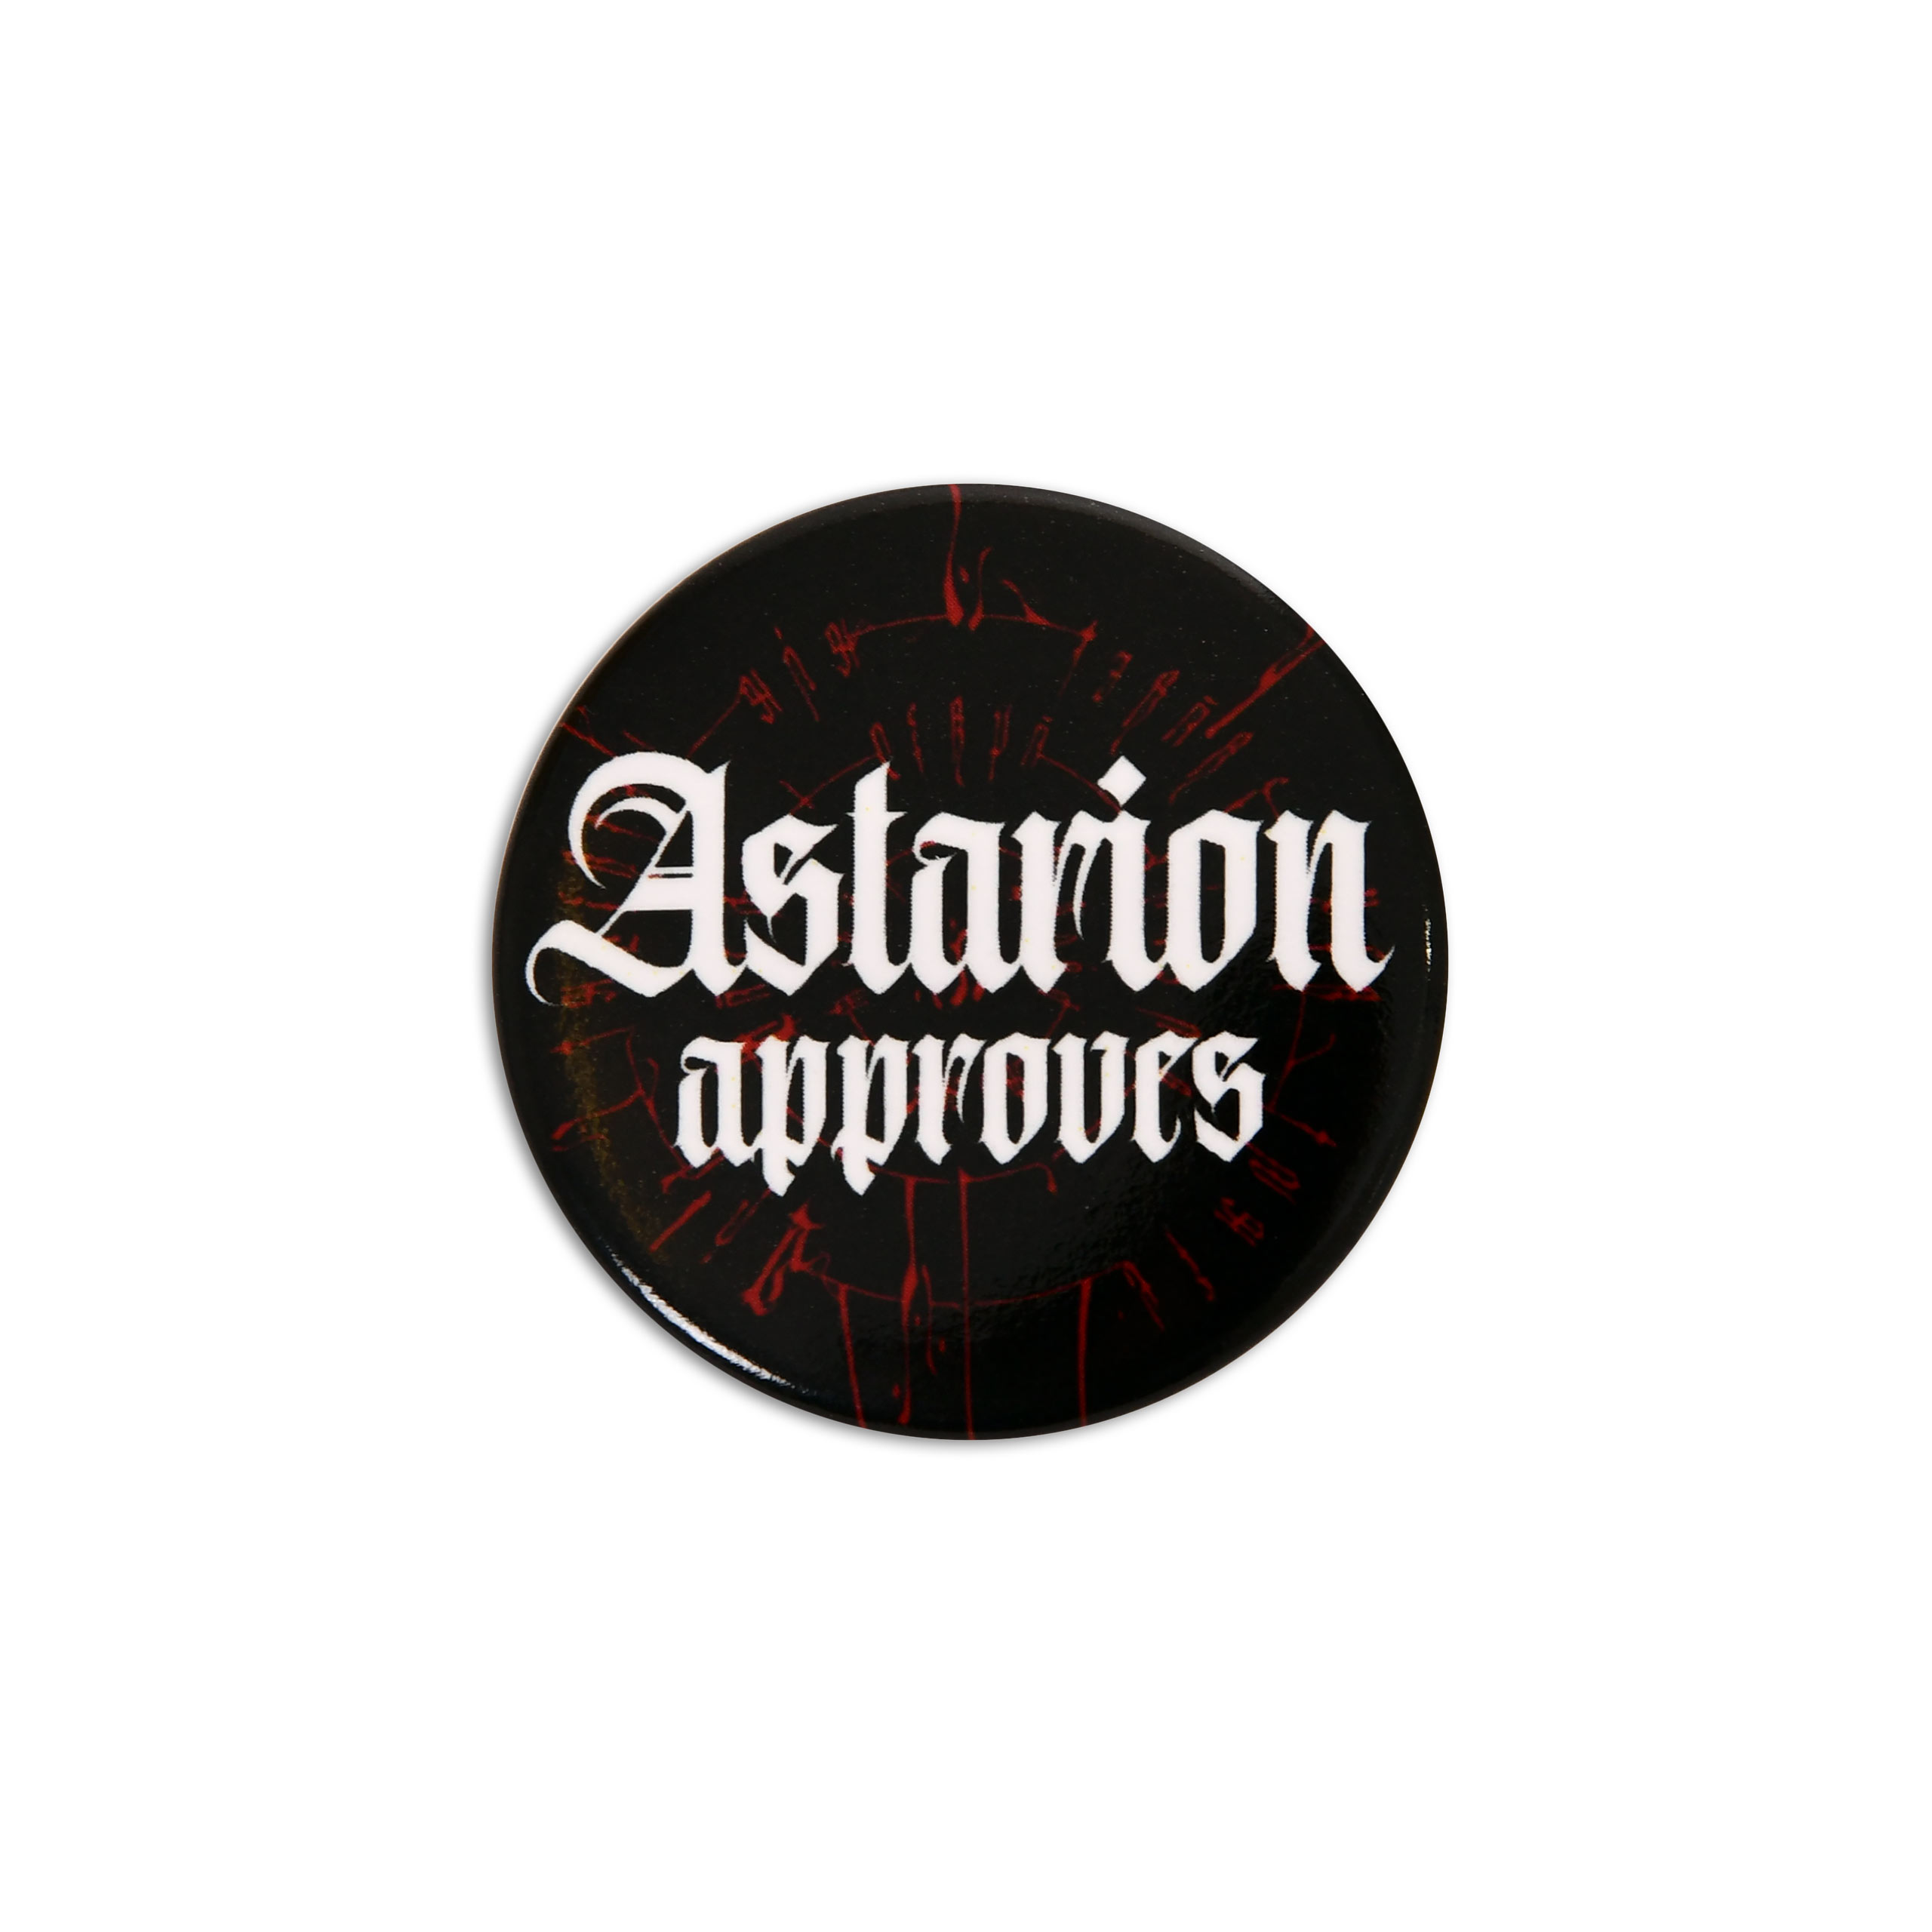 Bouton Astarion Approuve pour les fans de Baldur's Gate